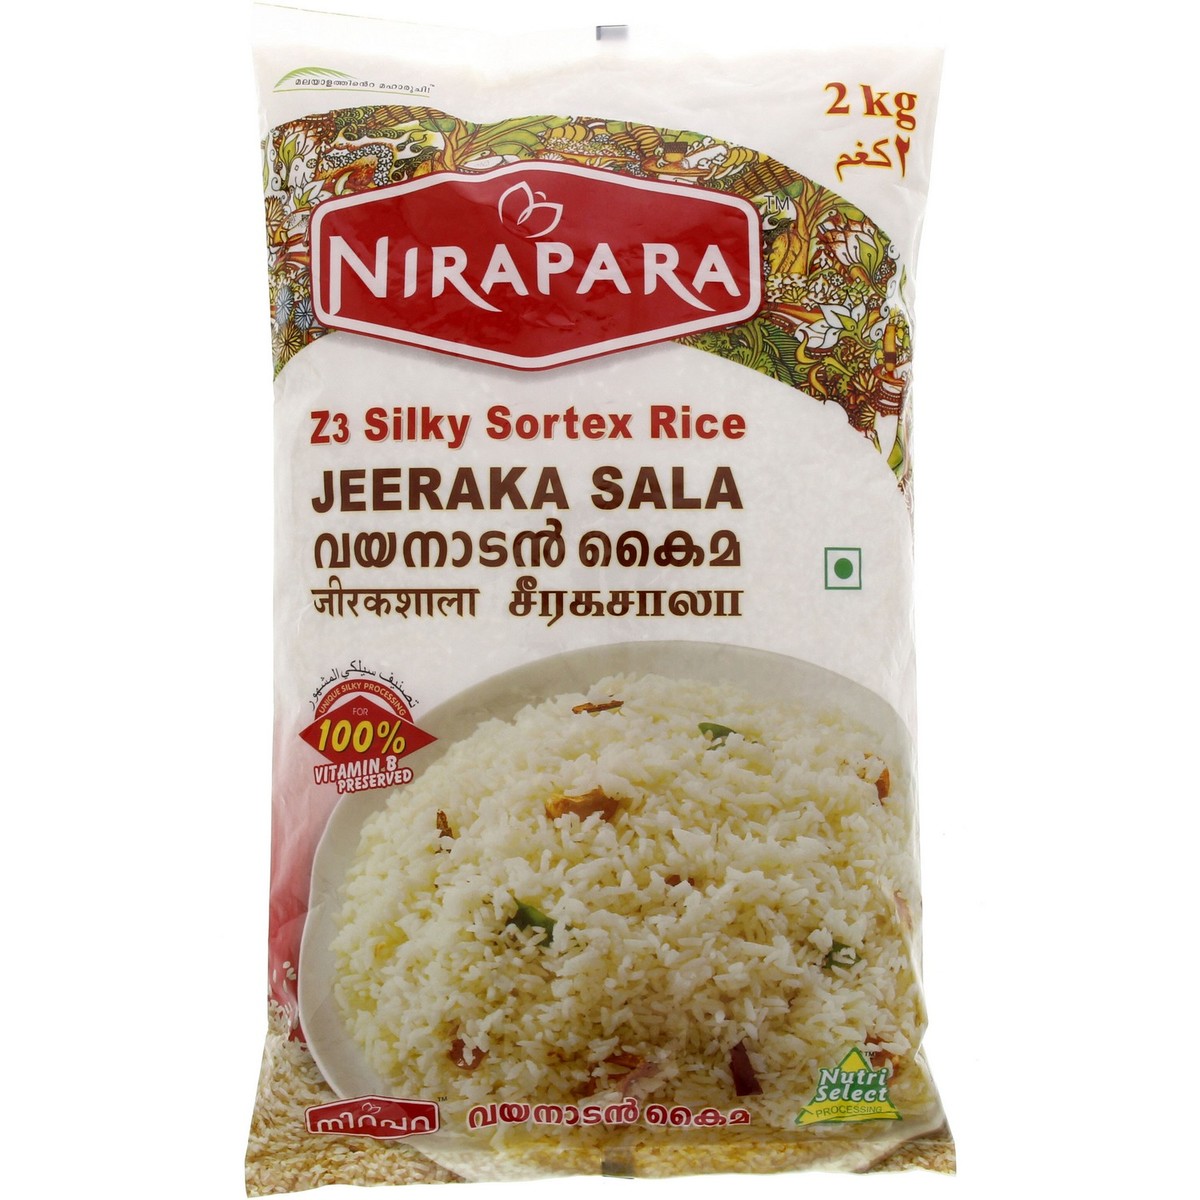 نيرابارا أرز جيراكاشالا 2 كجم